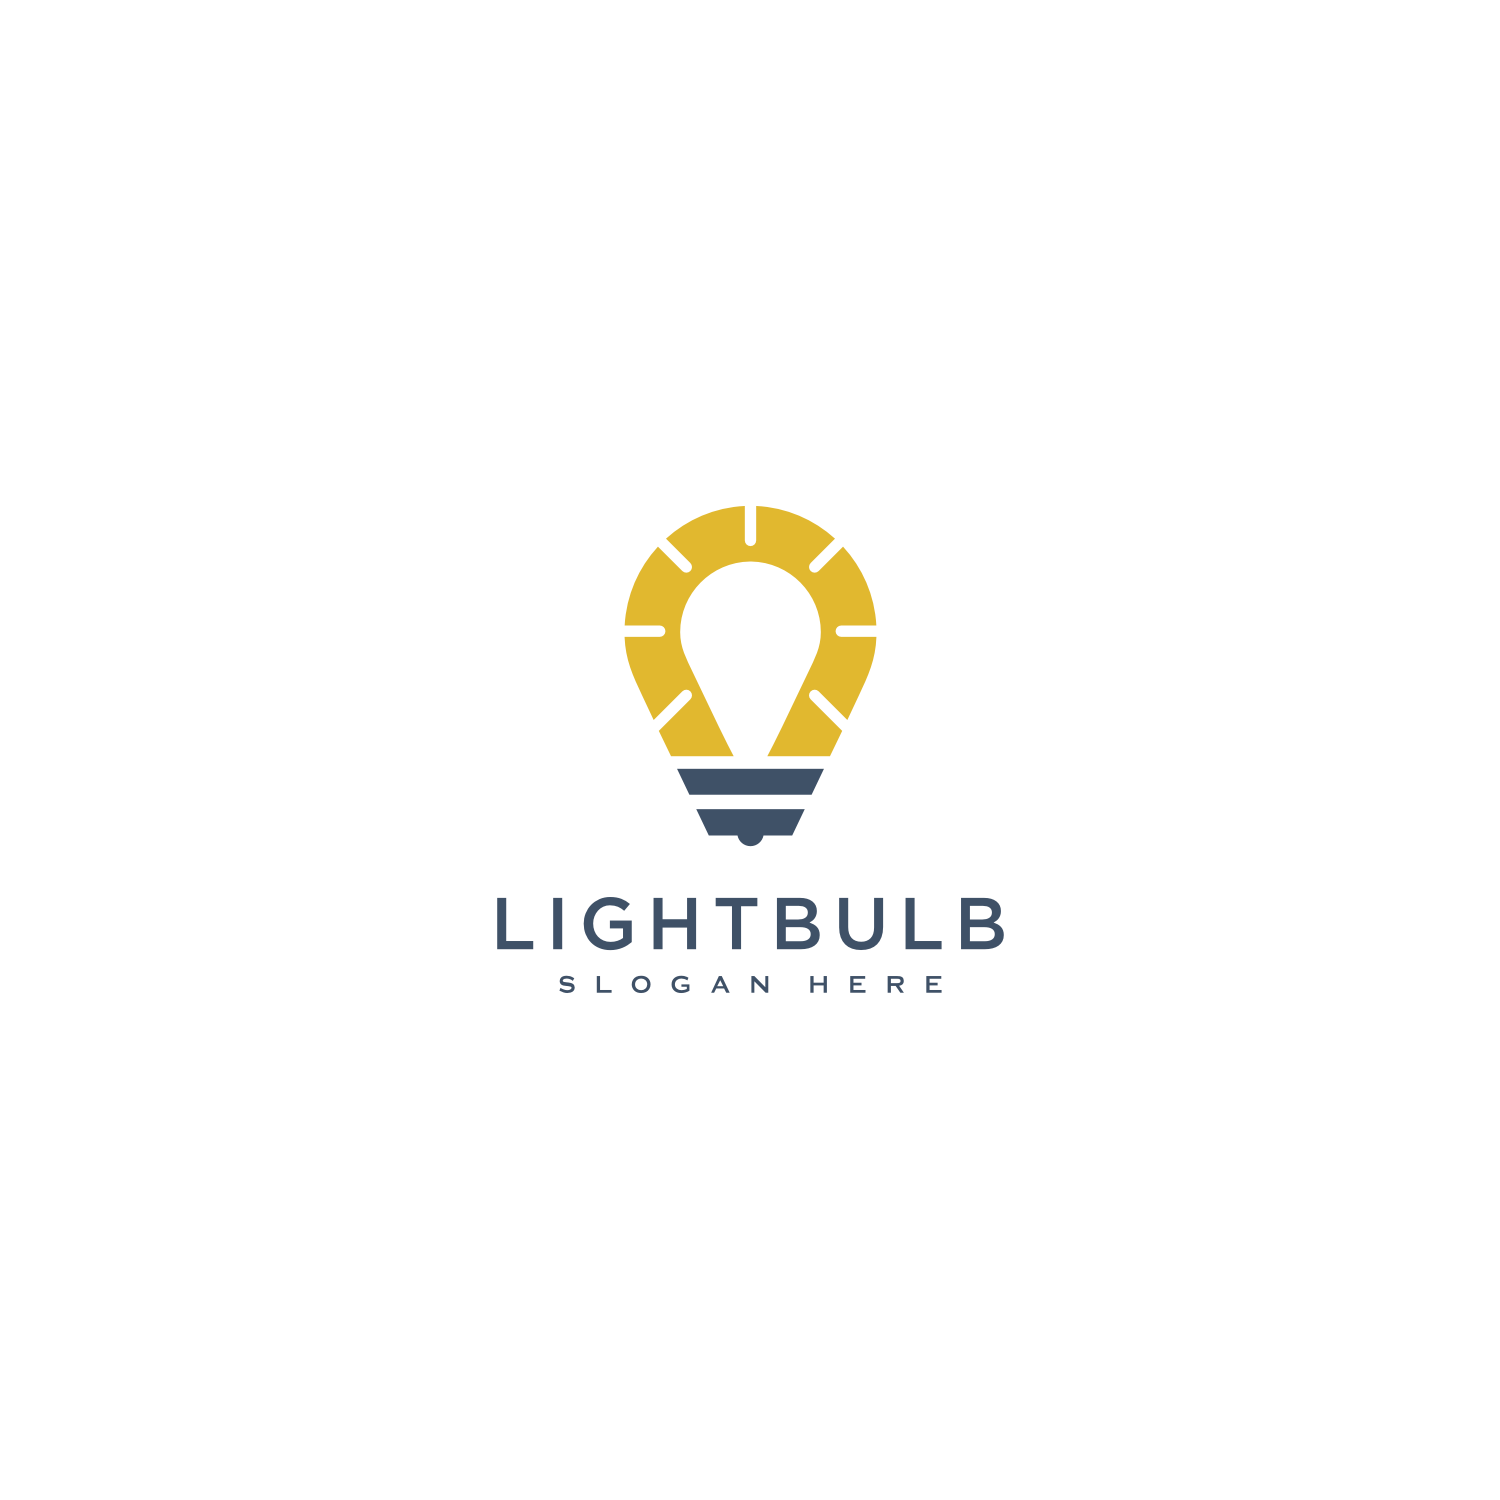 Light Bulb Logo Design Vector cover image.